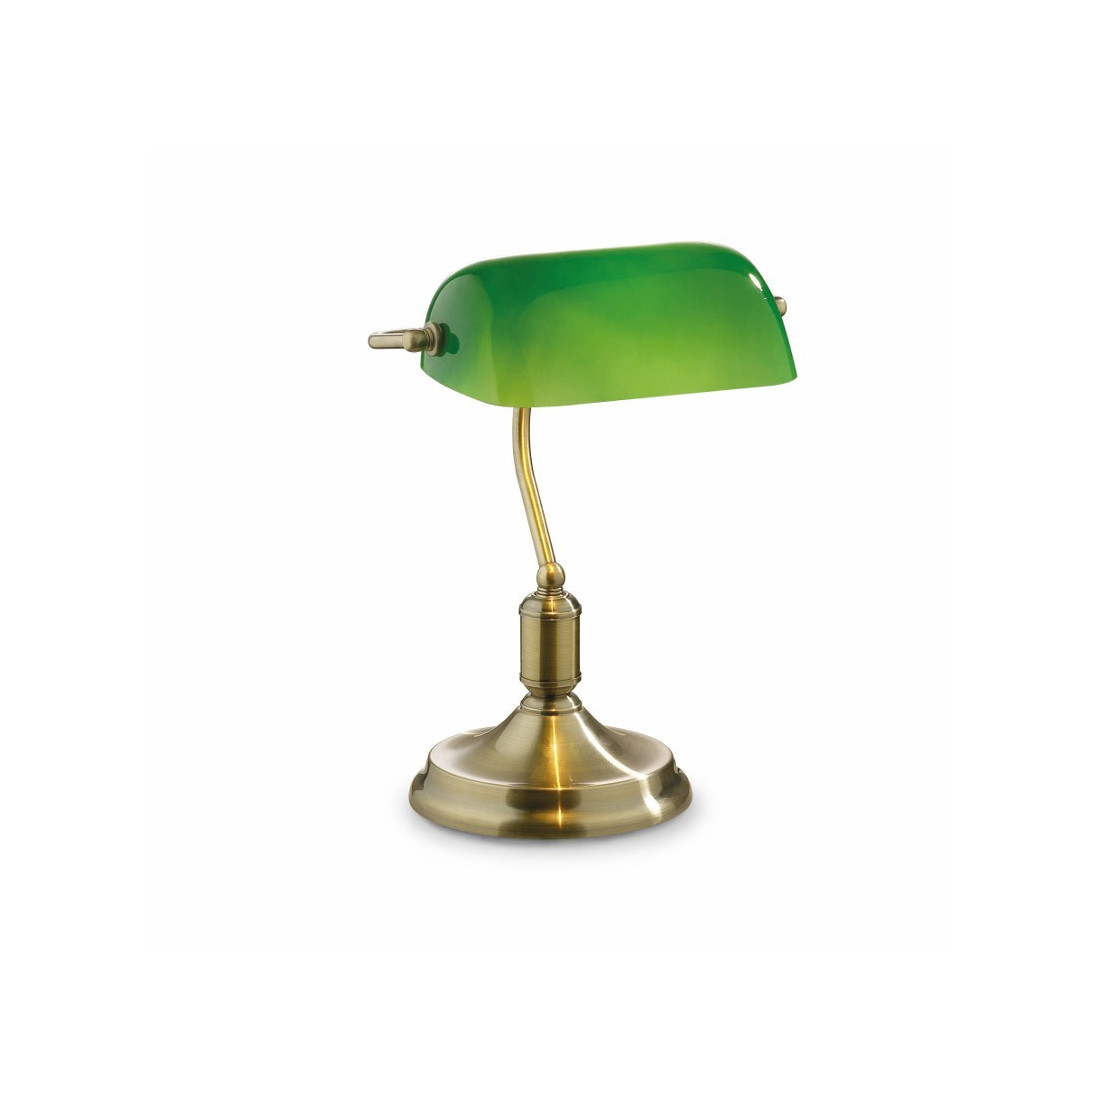 Abat-jour ID-LAWYER TL1 E27 vetro verde metallo classica lampada tavolo interno IP20